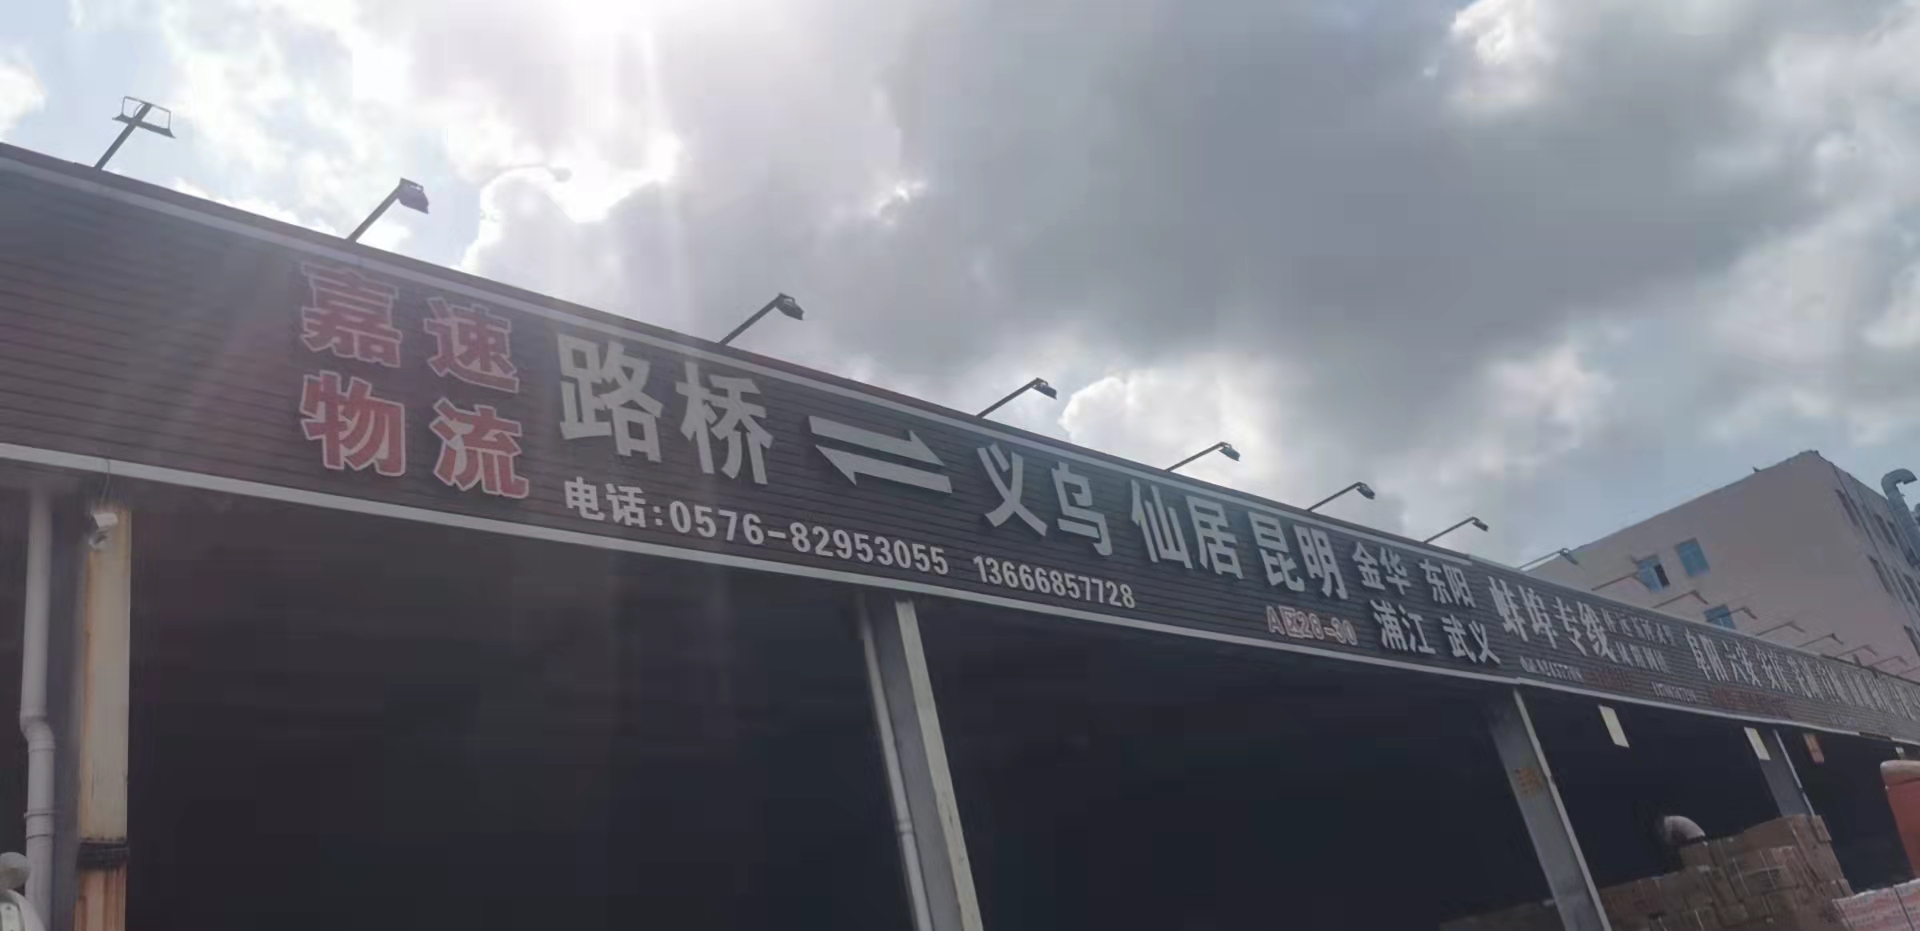 台州嘉速物流 的专线公司的形象展示LOGO